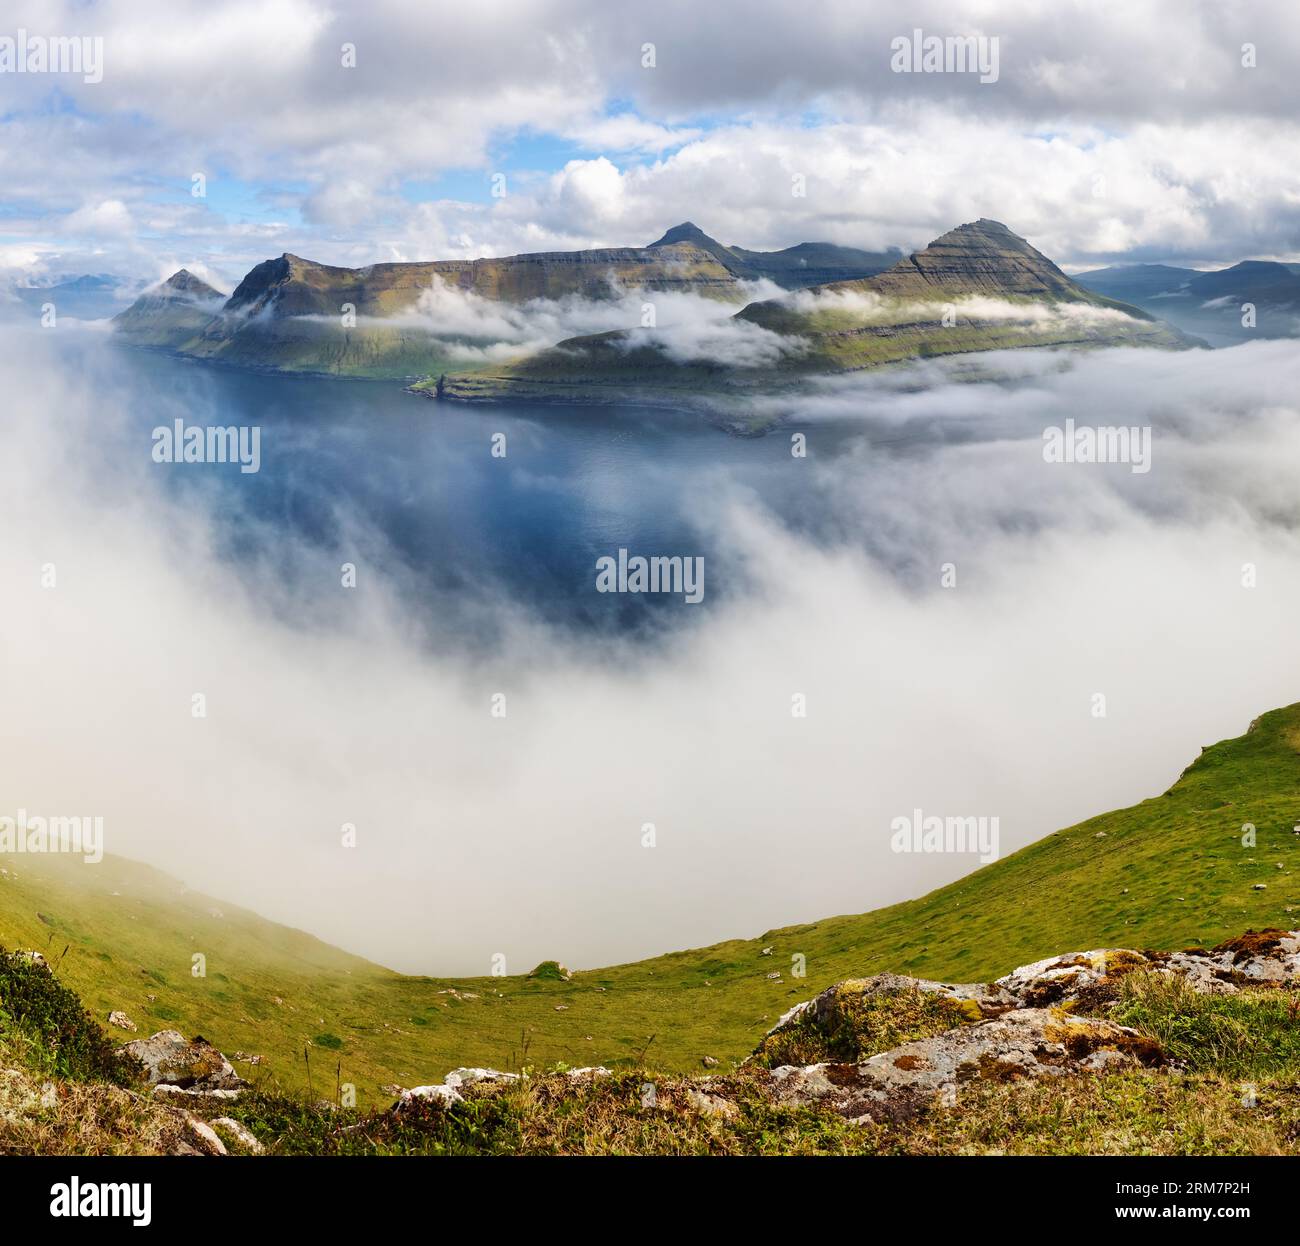 Panorama de paysage de montagne avec océan. Brouillard au-dessus du fjord Funningur sur l'île d'Eysturoy, îles Féroé. Banque D'Images